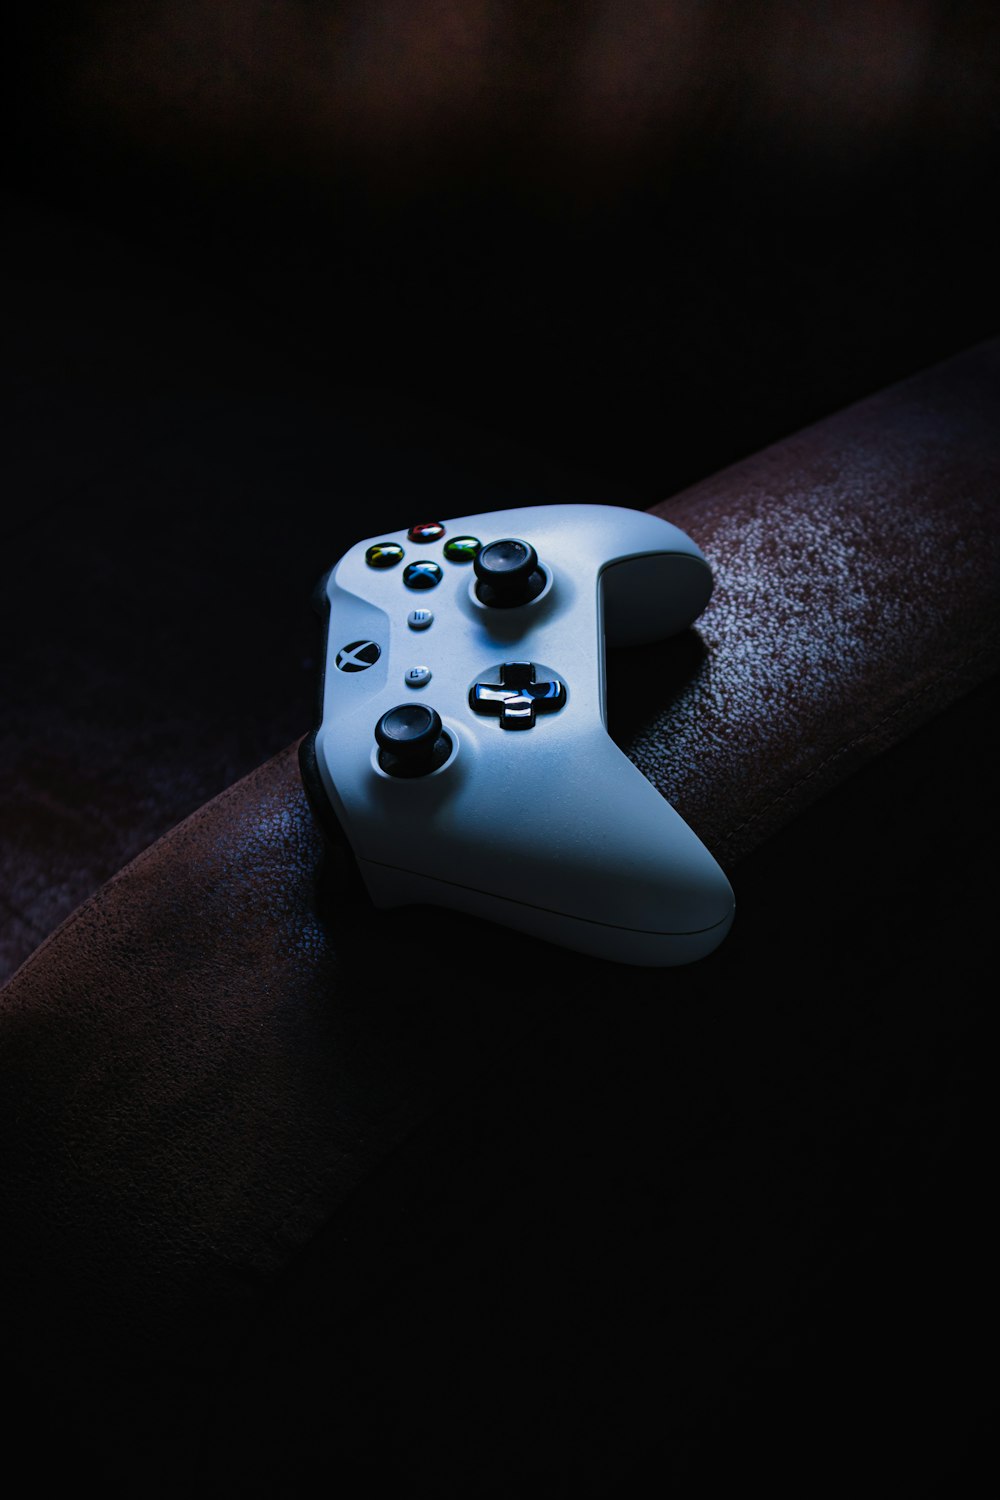 Xbox controller: Bạn yêu thích những trò chơi cảm giác mạnh mẽ và điều khiển chính xác? Hãy sở hữu chiếc Xbox controller của chúng tôi! Với thiết kế hiện đại và chức năng hoàn hảo, chiếc tay cầm từ Xbox sẽ mang lại cho bạn những trải nghiệm chơi game đỉnh cao nhất.